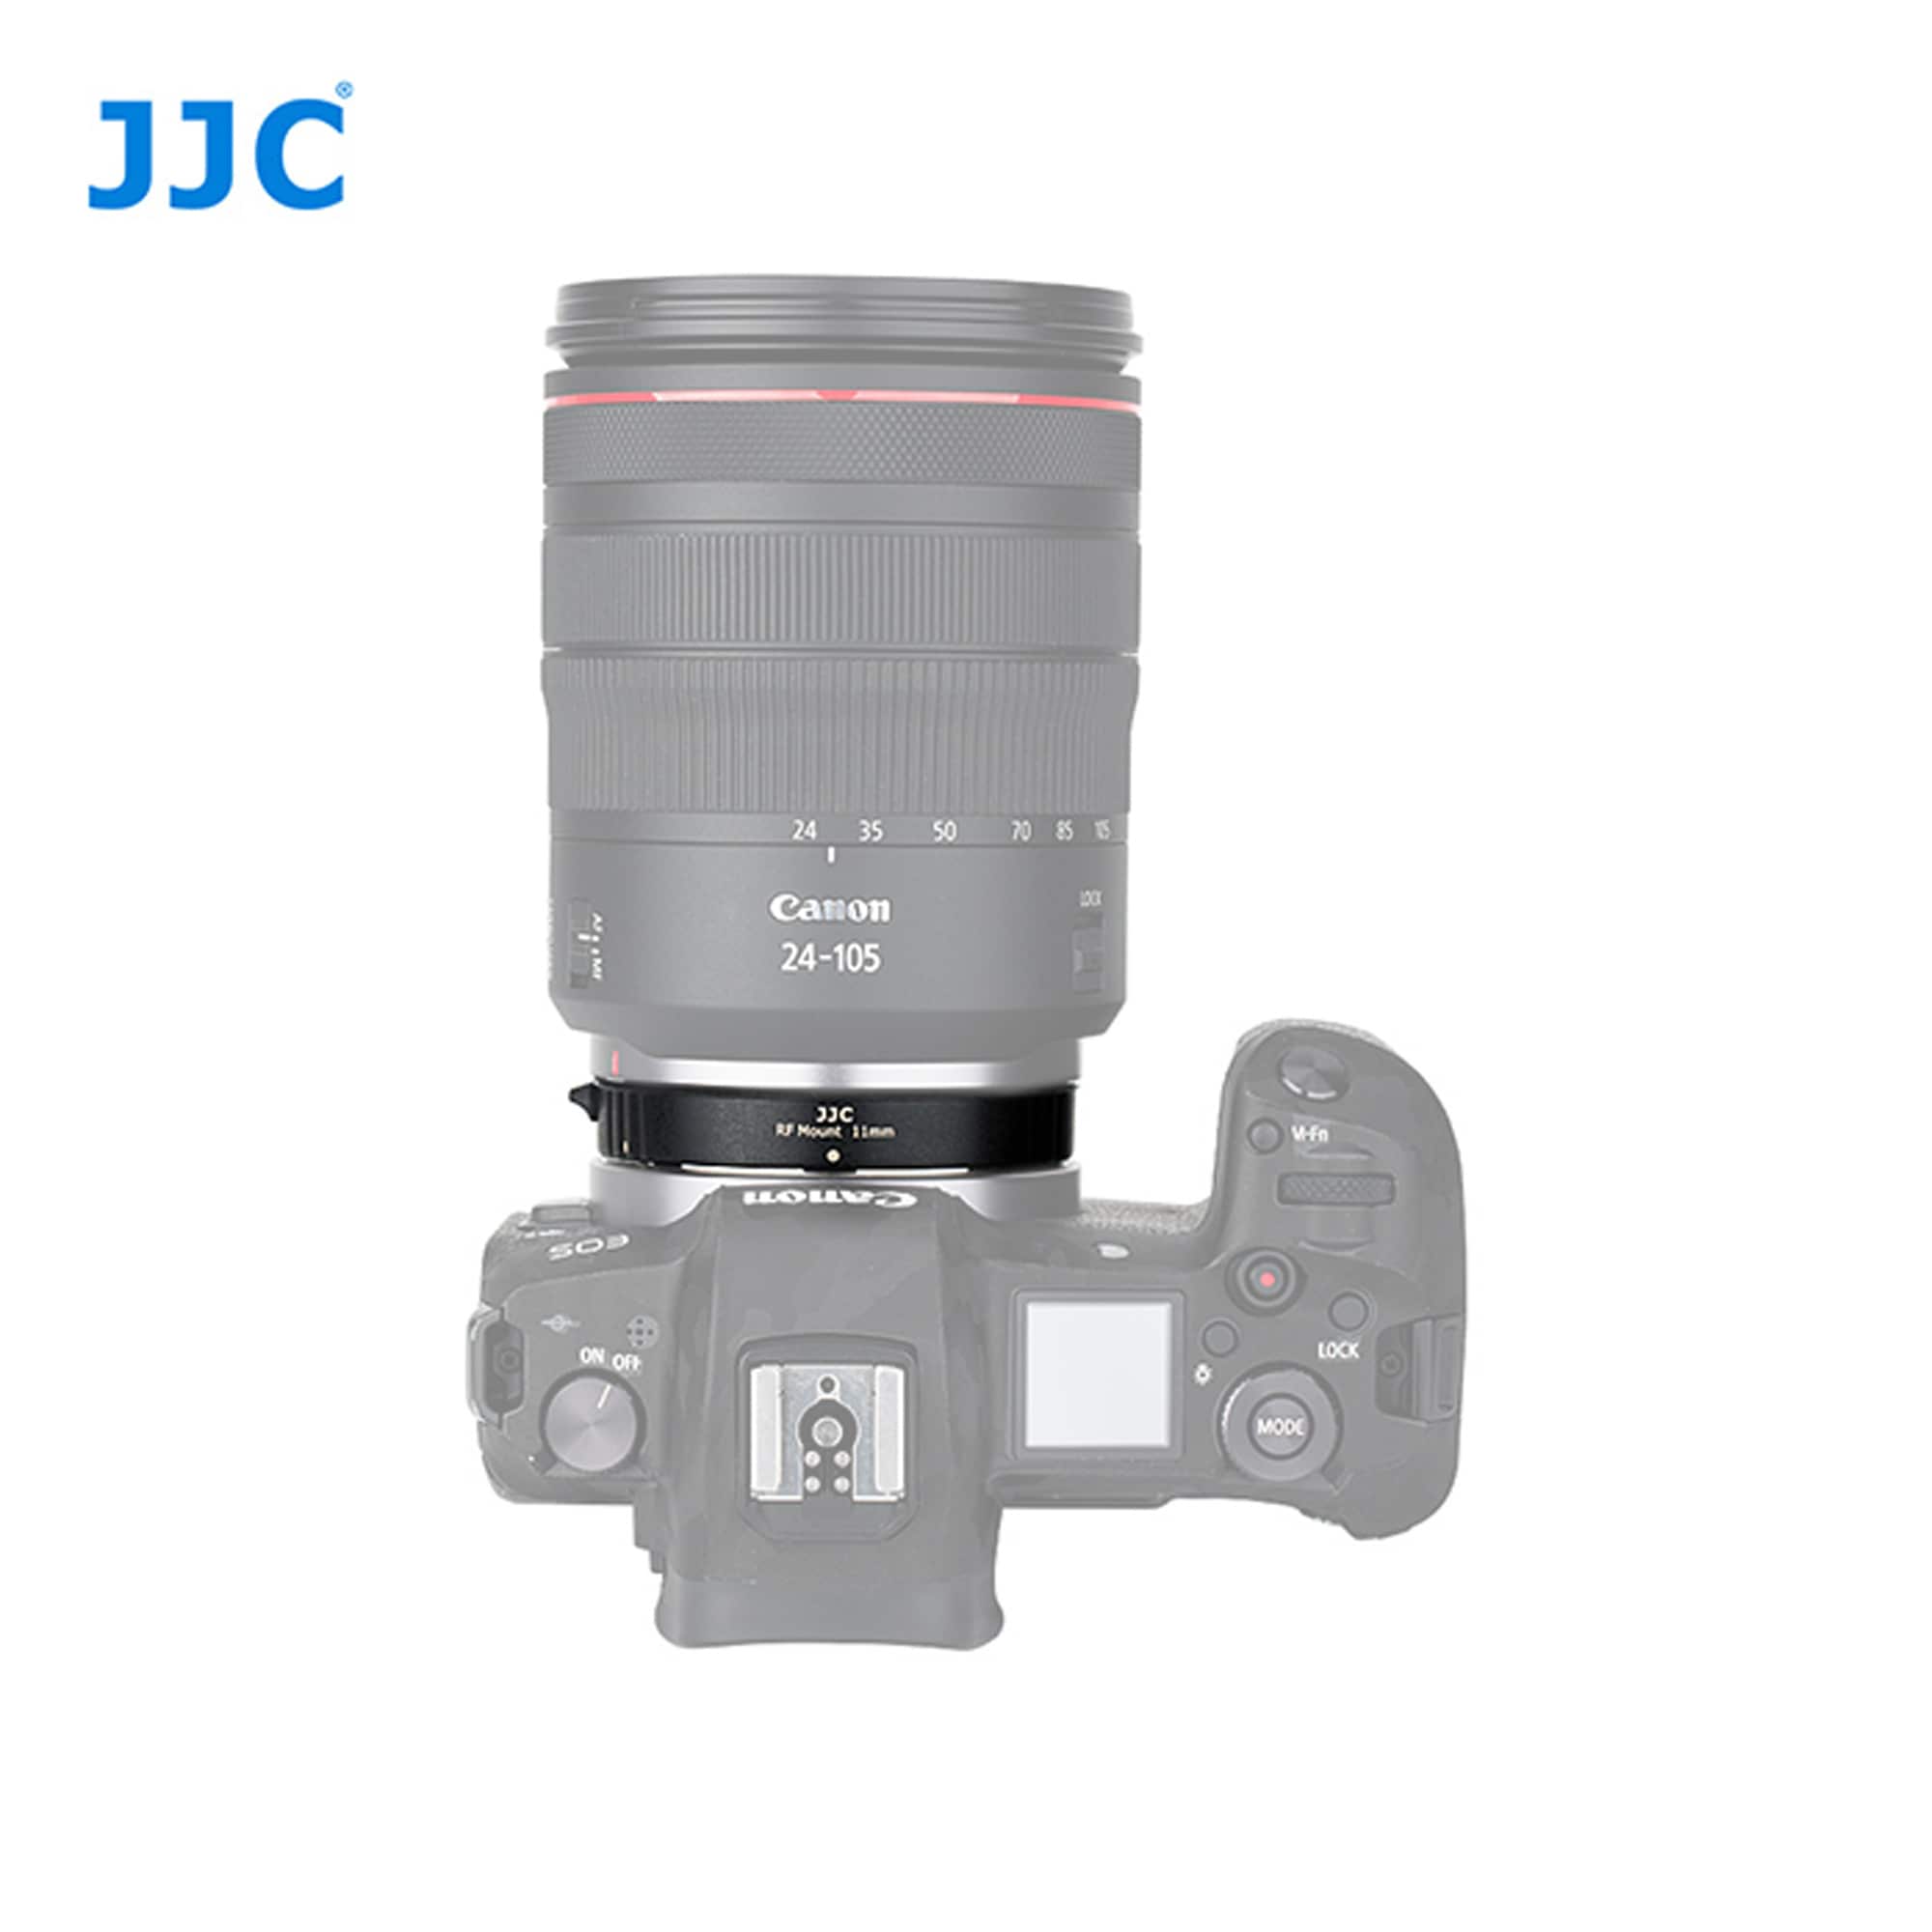 JJC Mellanringssats Till Canon EOS RF